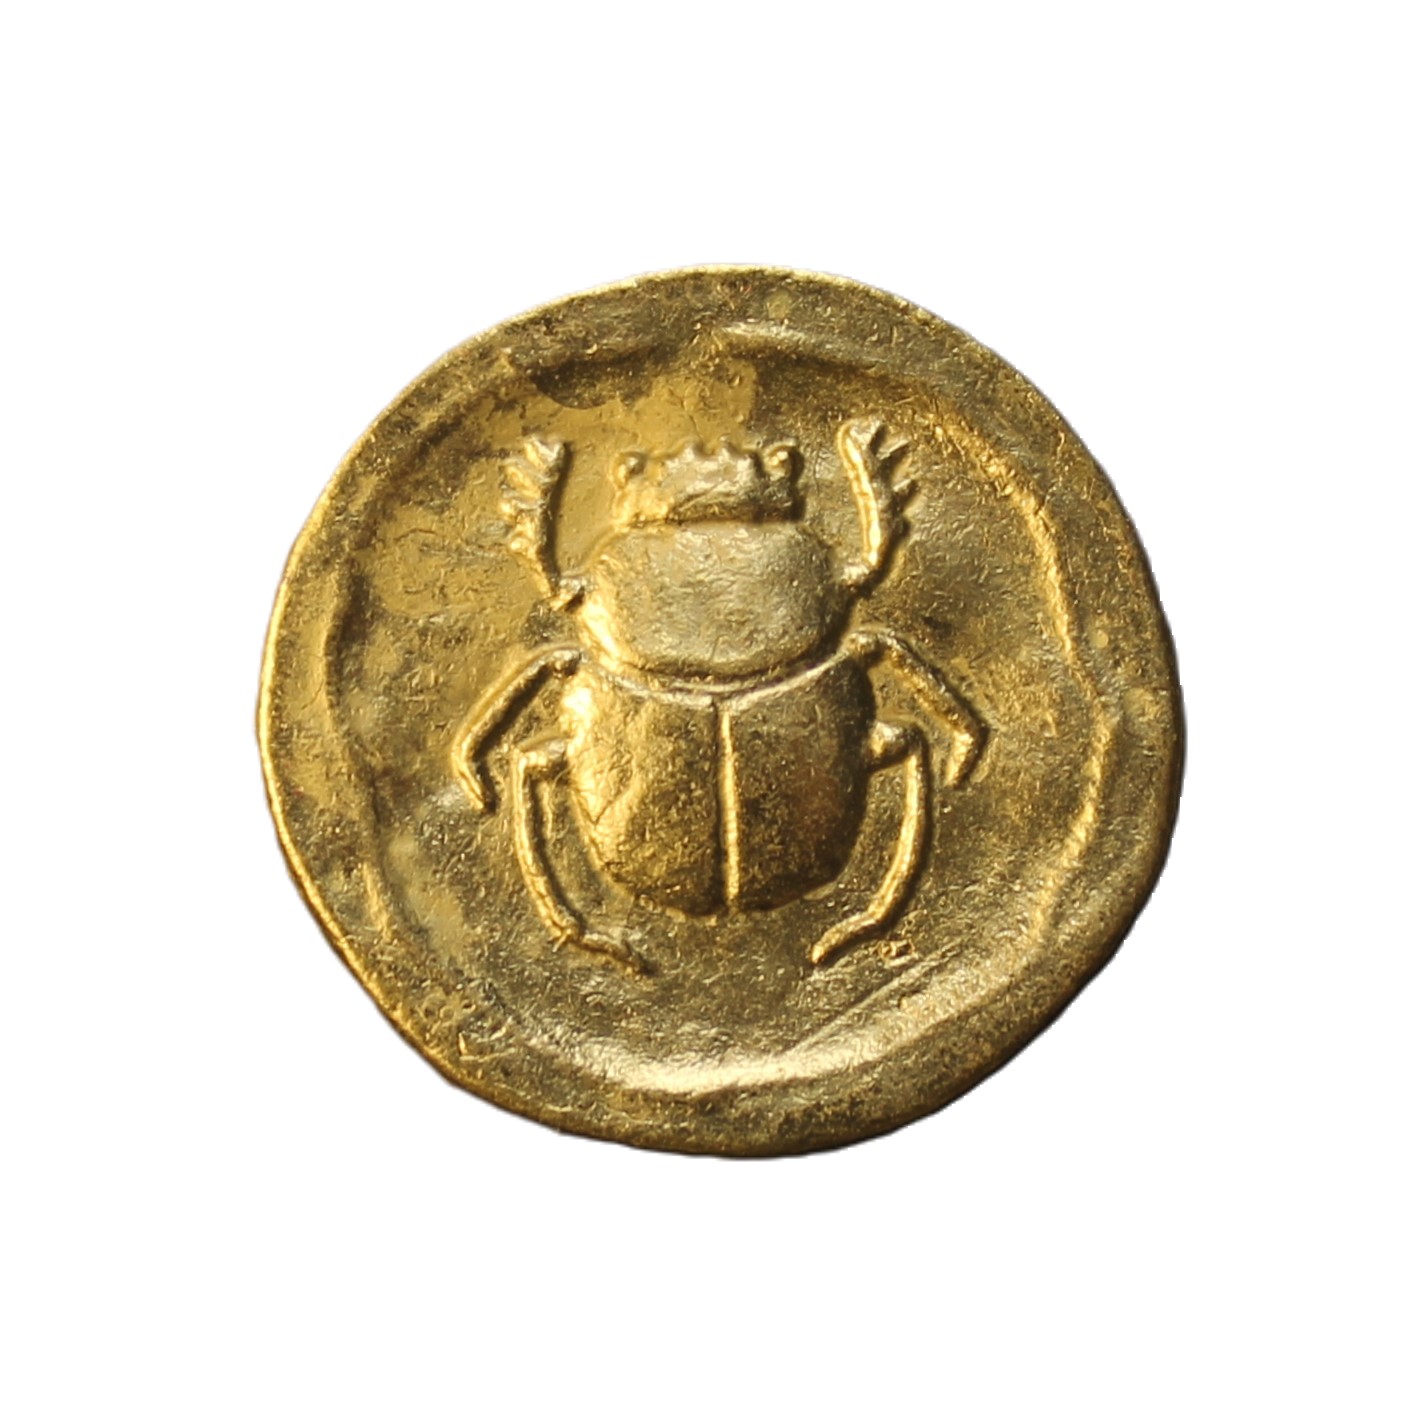 Сувенирная монета 1toy Золото магнитного моря Скарабей